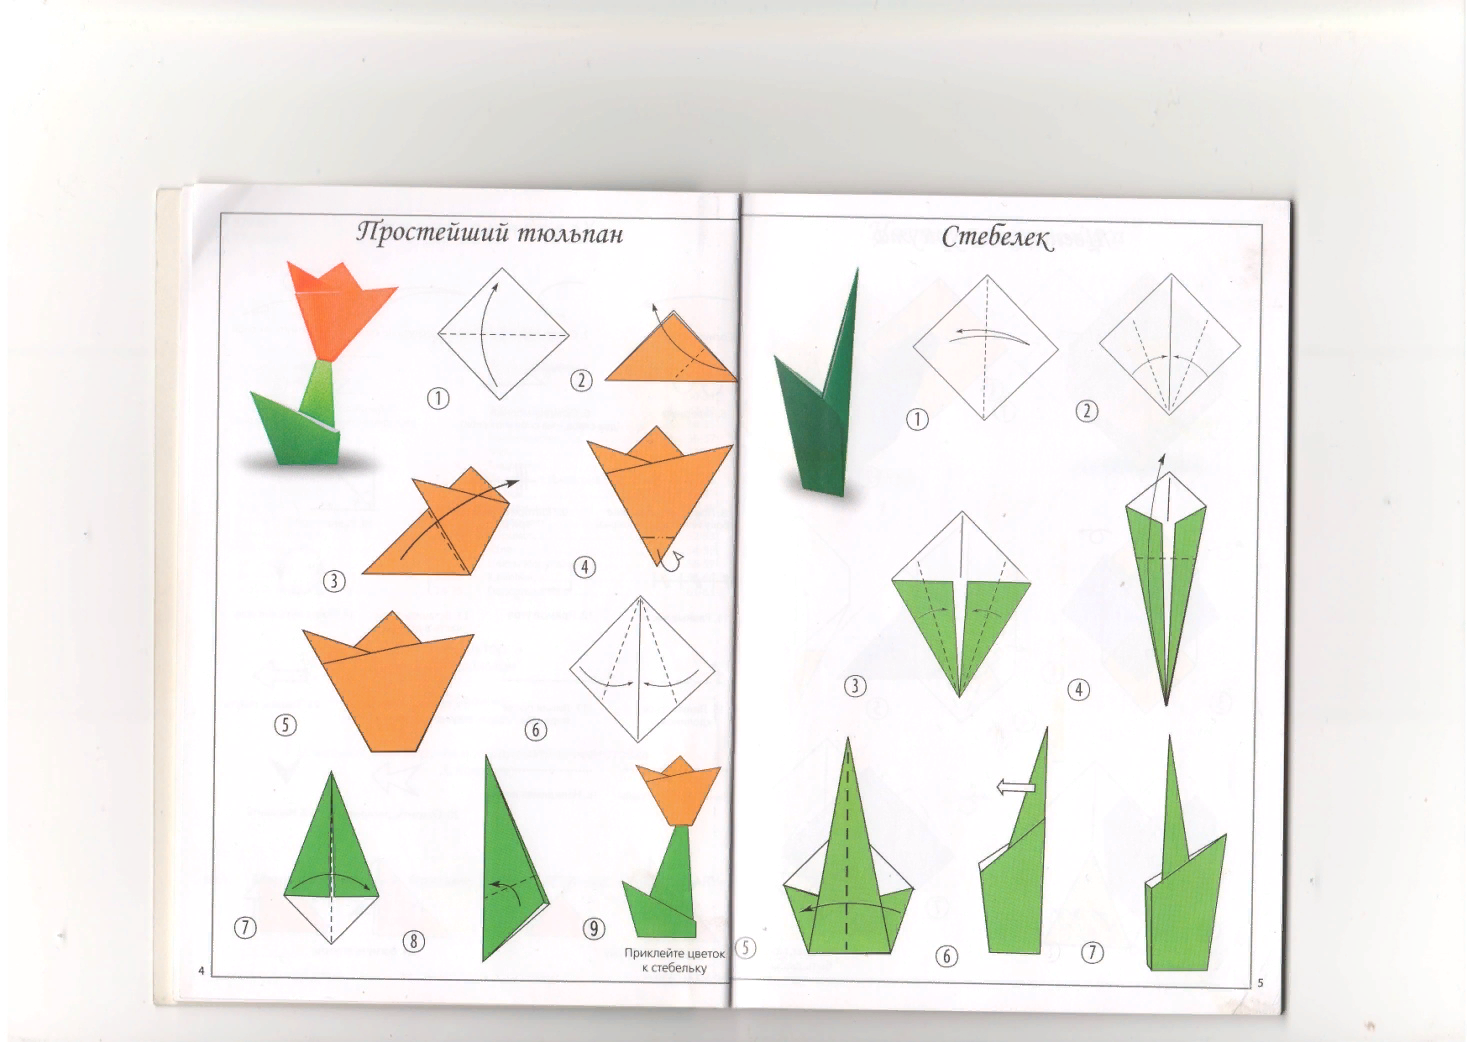 Тех карты для старшей группы. Схемы оригами для дошкольников. Оригами из бумаги для детей. Конструирование из бумаги. Оригами подготовительная группа схемы.